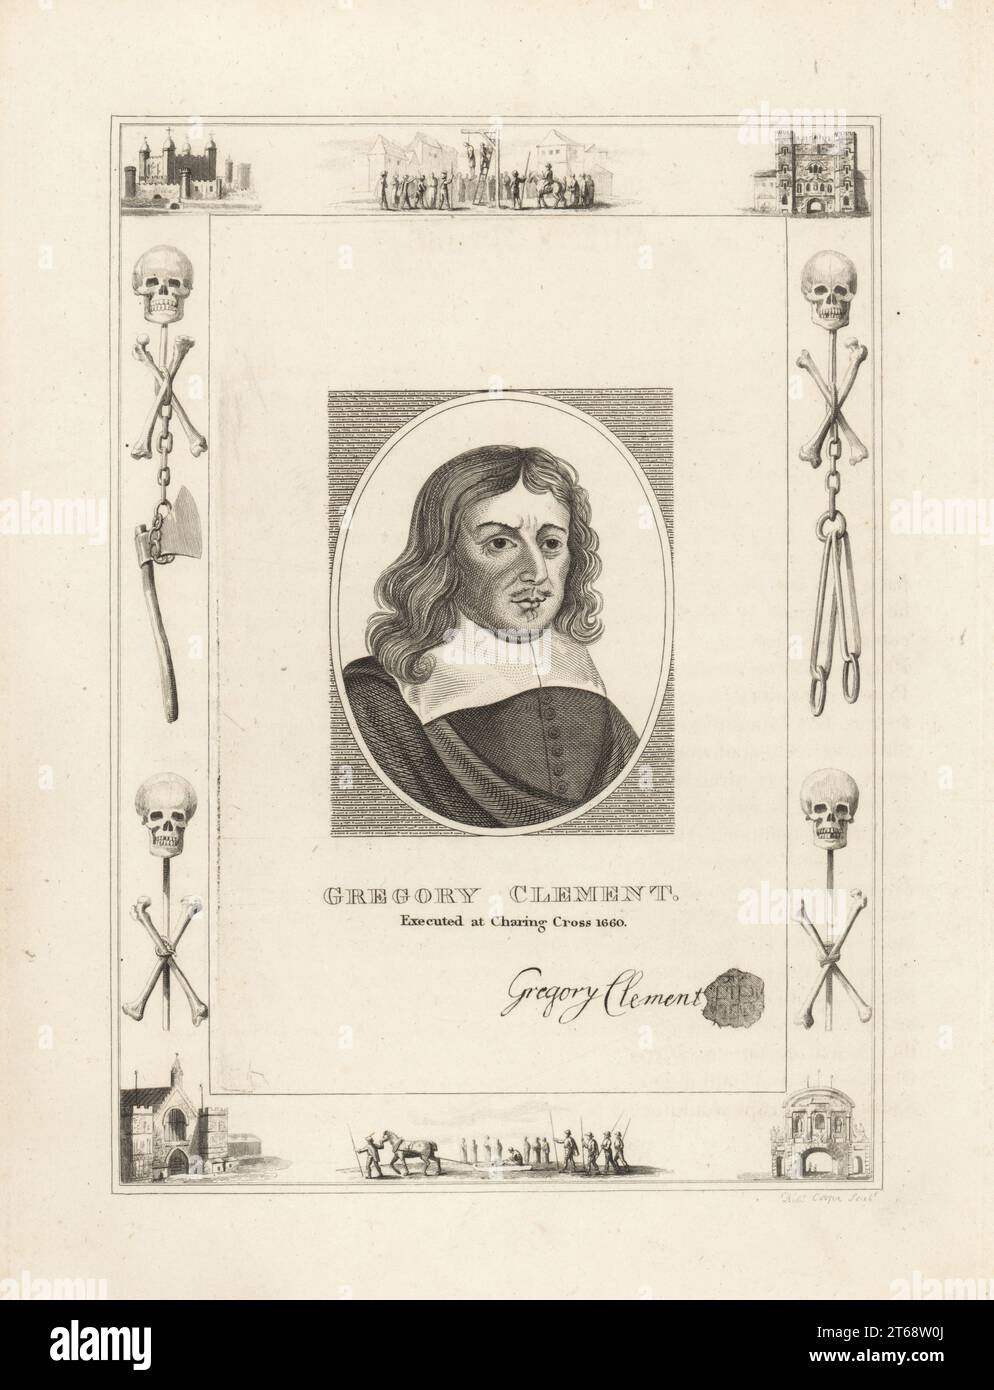 Gregory Clemens, 1594–1660, am 17. Oktober 1660 in Charing Cross hingerichtet. Englisches Parlamentsabgeordnetes und Regimord von König Karl I., vor Gericht gestellt und gehängt, gezogen und geviertelt. Mit seinem Autogramm und Siegel. In einem Rahmen, der mit Vignetten aus Schädel und Kreuzknochen, Ketten und Henker-Axt verziert ist, hängt ein Mann an einem Gibbet in Tyburn, ein verurteilter Mann auf einem Schlitten, im Tower of London, Newgate Prison. Kupferstich von Robert Cooper aus James Caulfields the High Court of Justice, London, 1820. Stockfoto